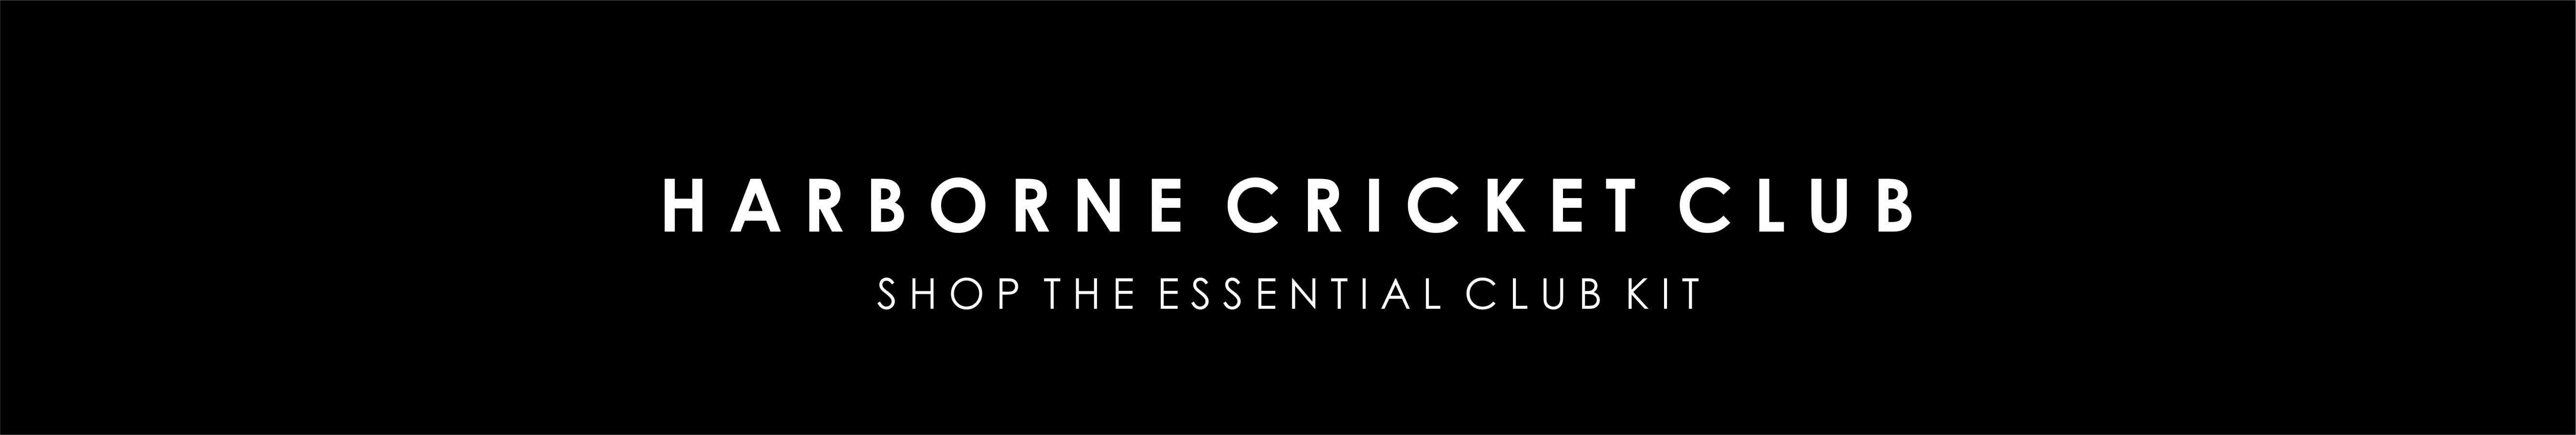 harborne-cricket-banner-update.jpg